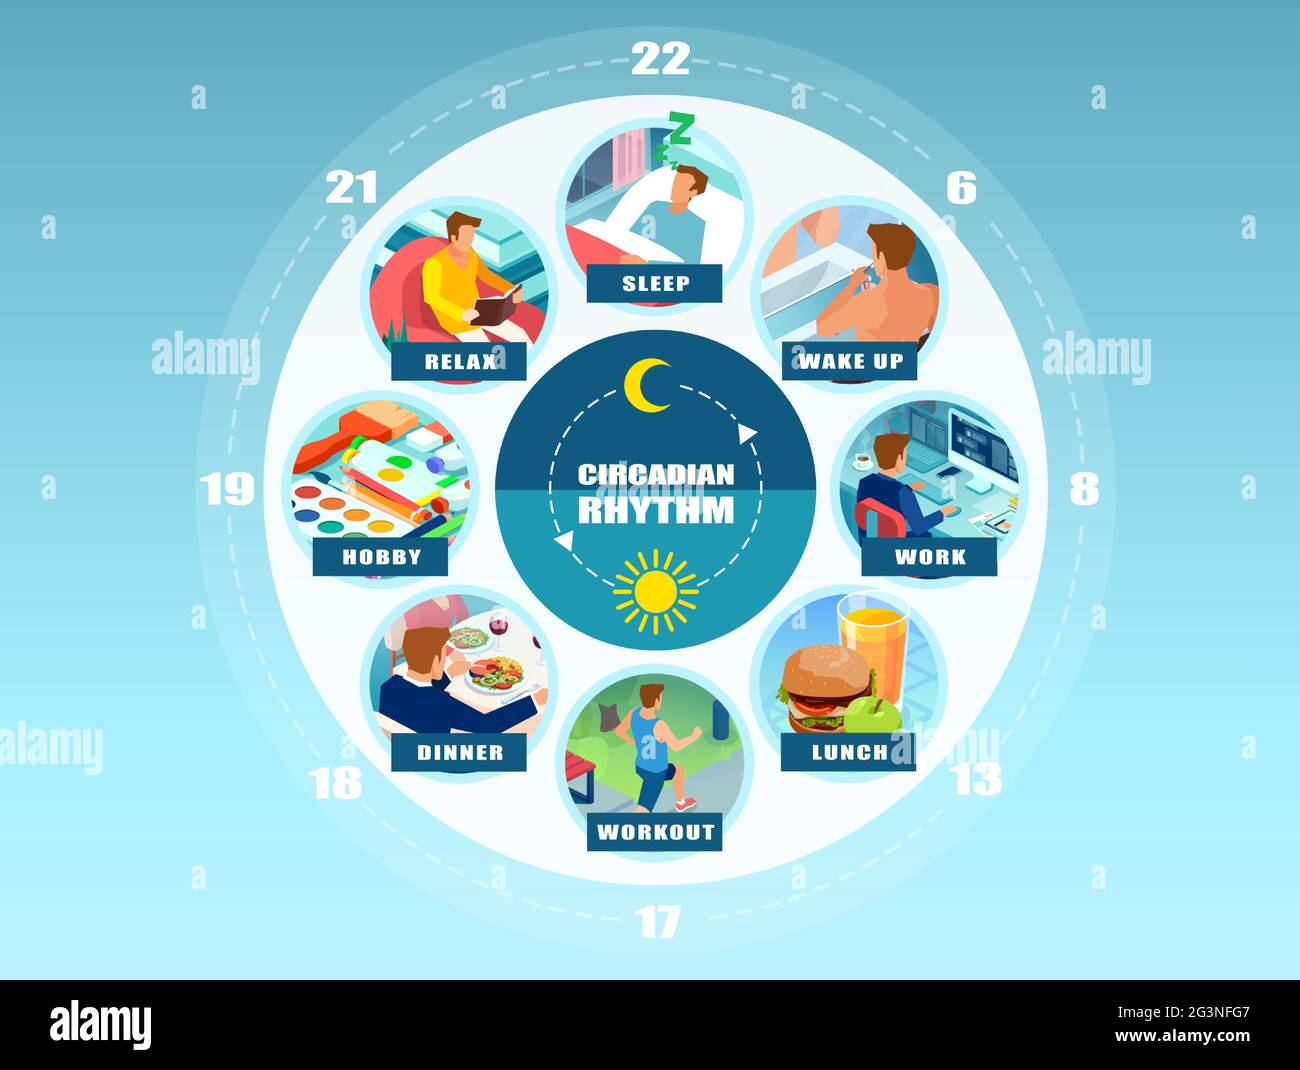 Infographie vectorielle d'un rythme circadien et de la routine quotidienne d'un jeune homme. Concept de bien-être Illustration de Vecteur